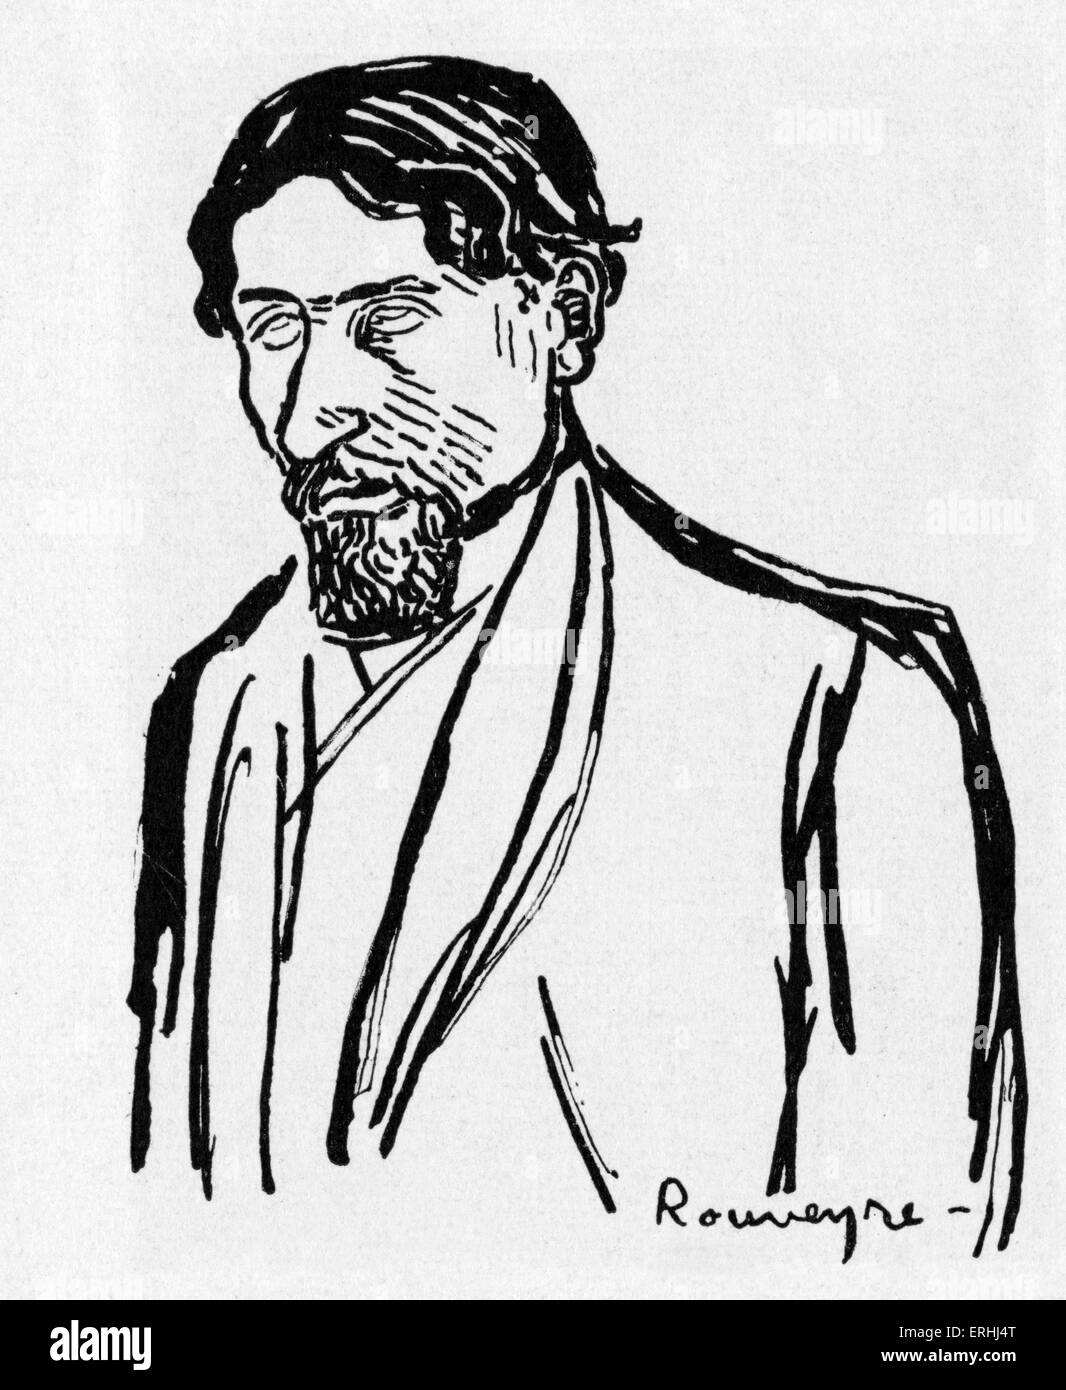 Jules romani - Ritratto dell'autore francese e il fondatore di unanimism. Disegno di André Rouveyre. 26 Agosto 1885 - 14 Foto Stock